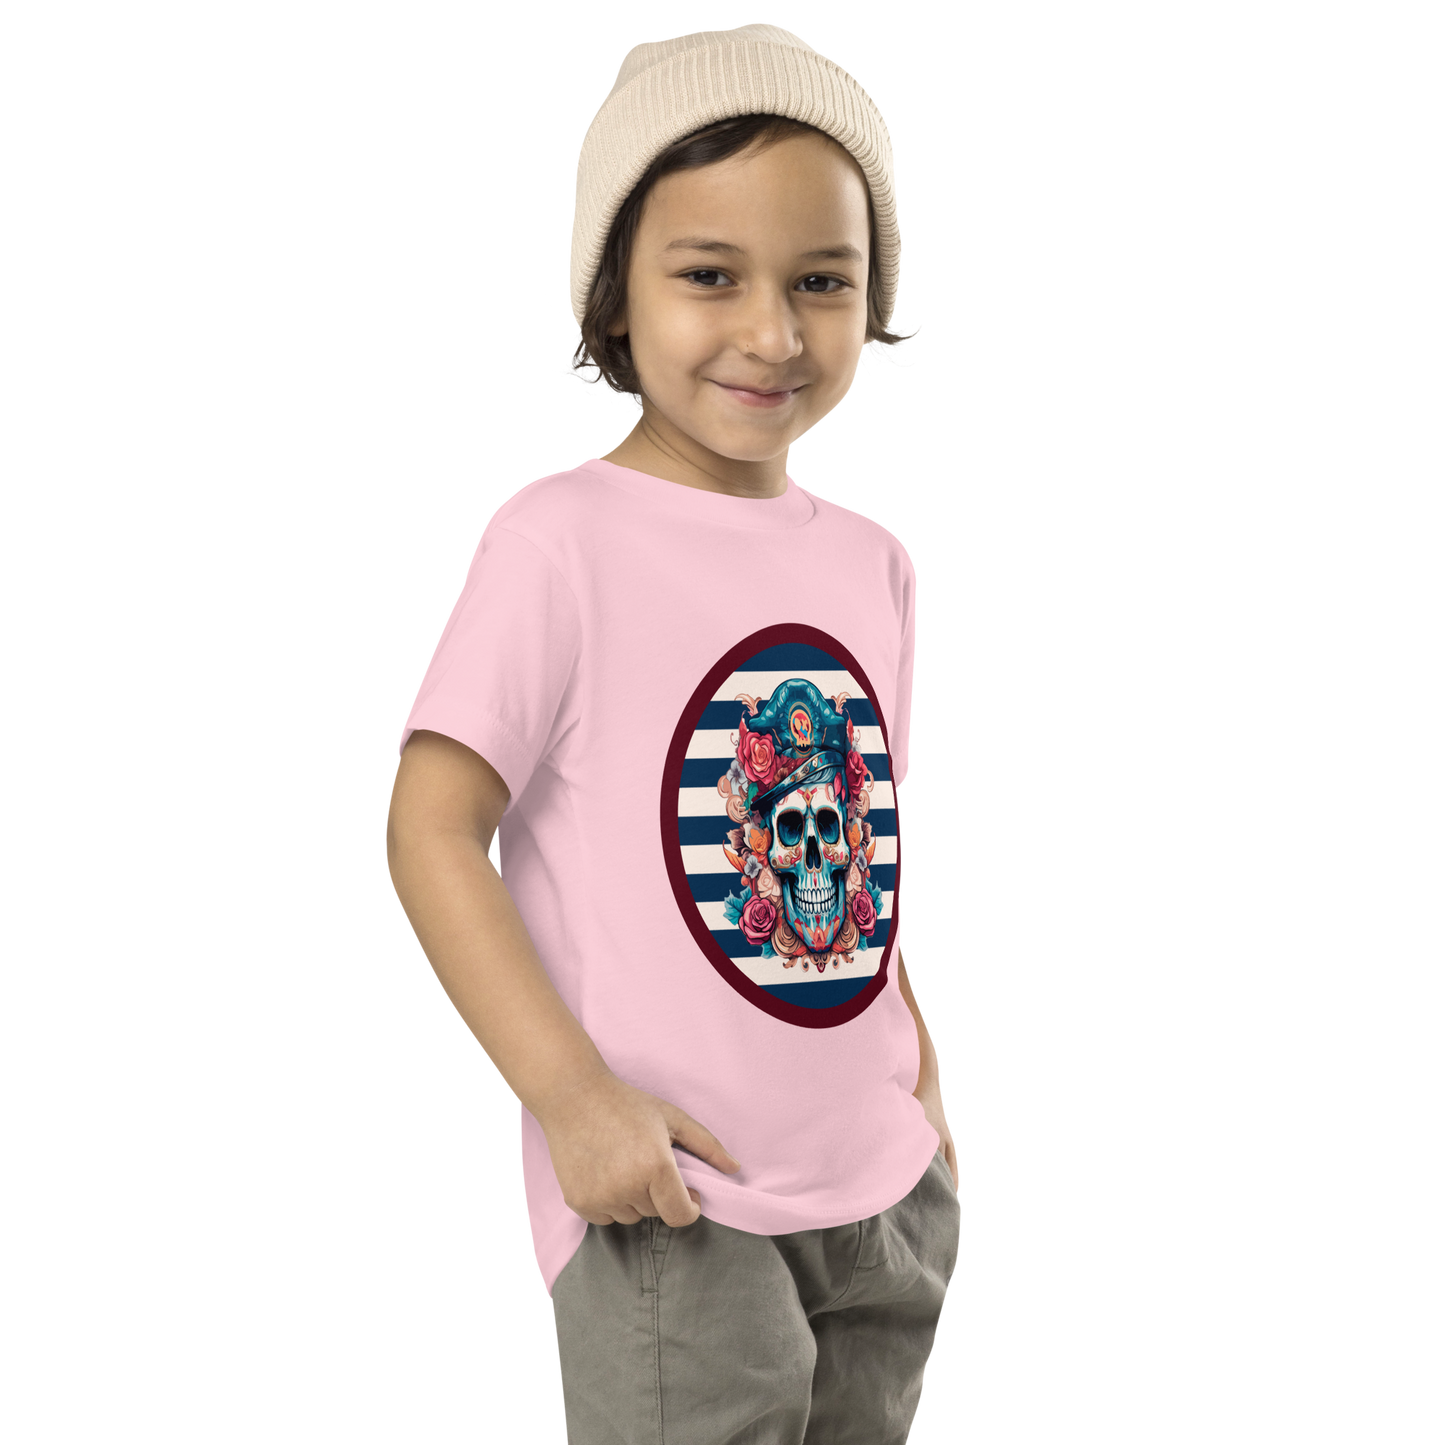 Infantil # PONTELLA // Camiseta Esencial // Unisex